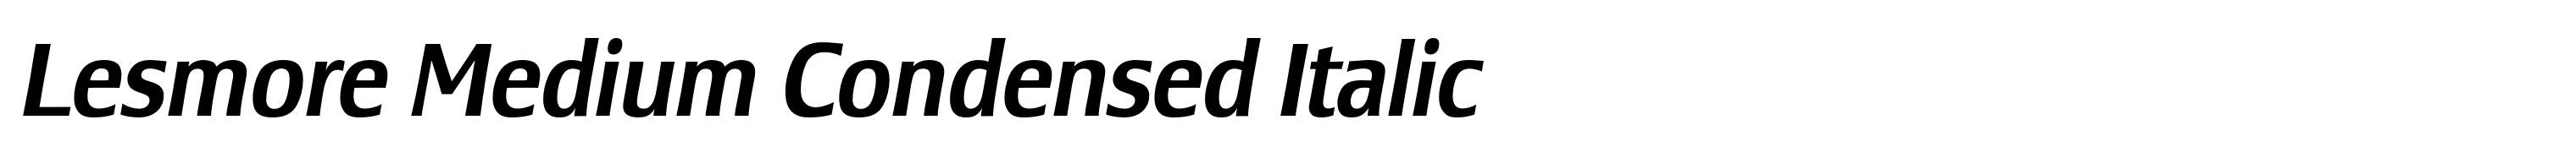 Lesmore Medium Condensed Italic